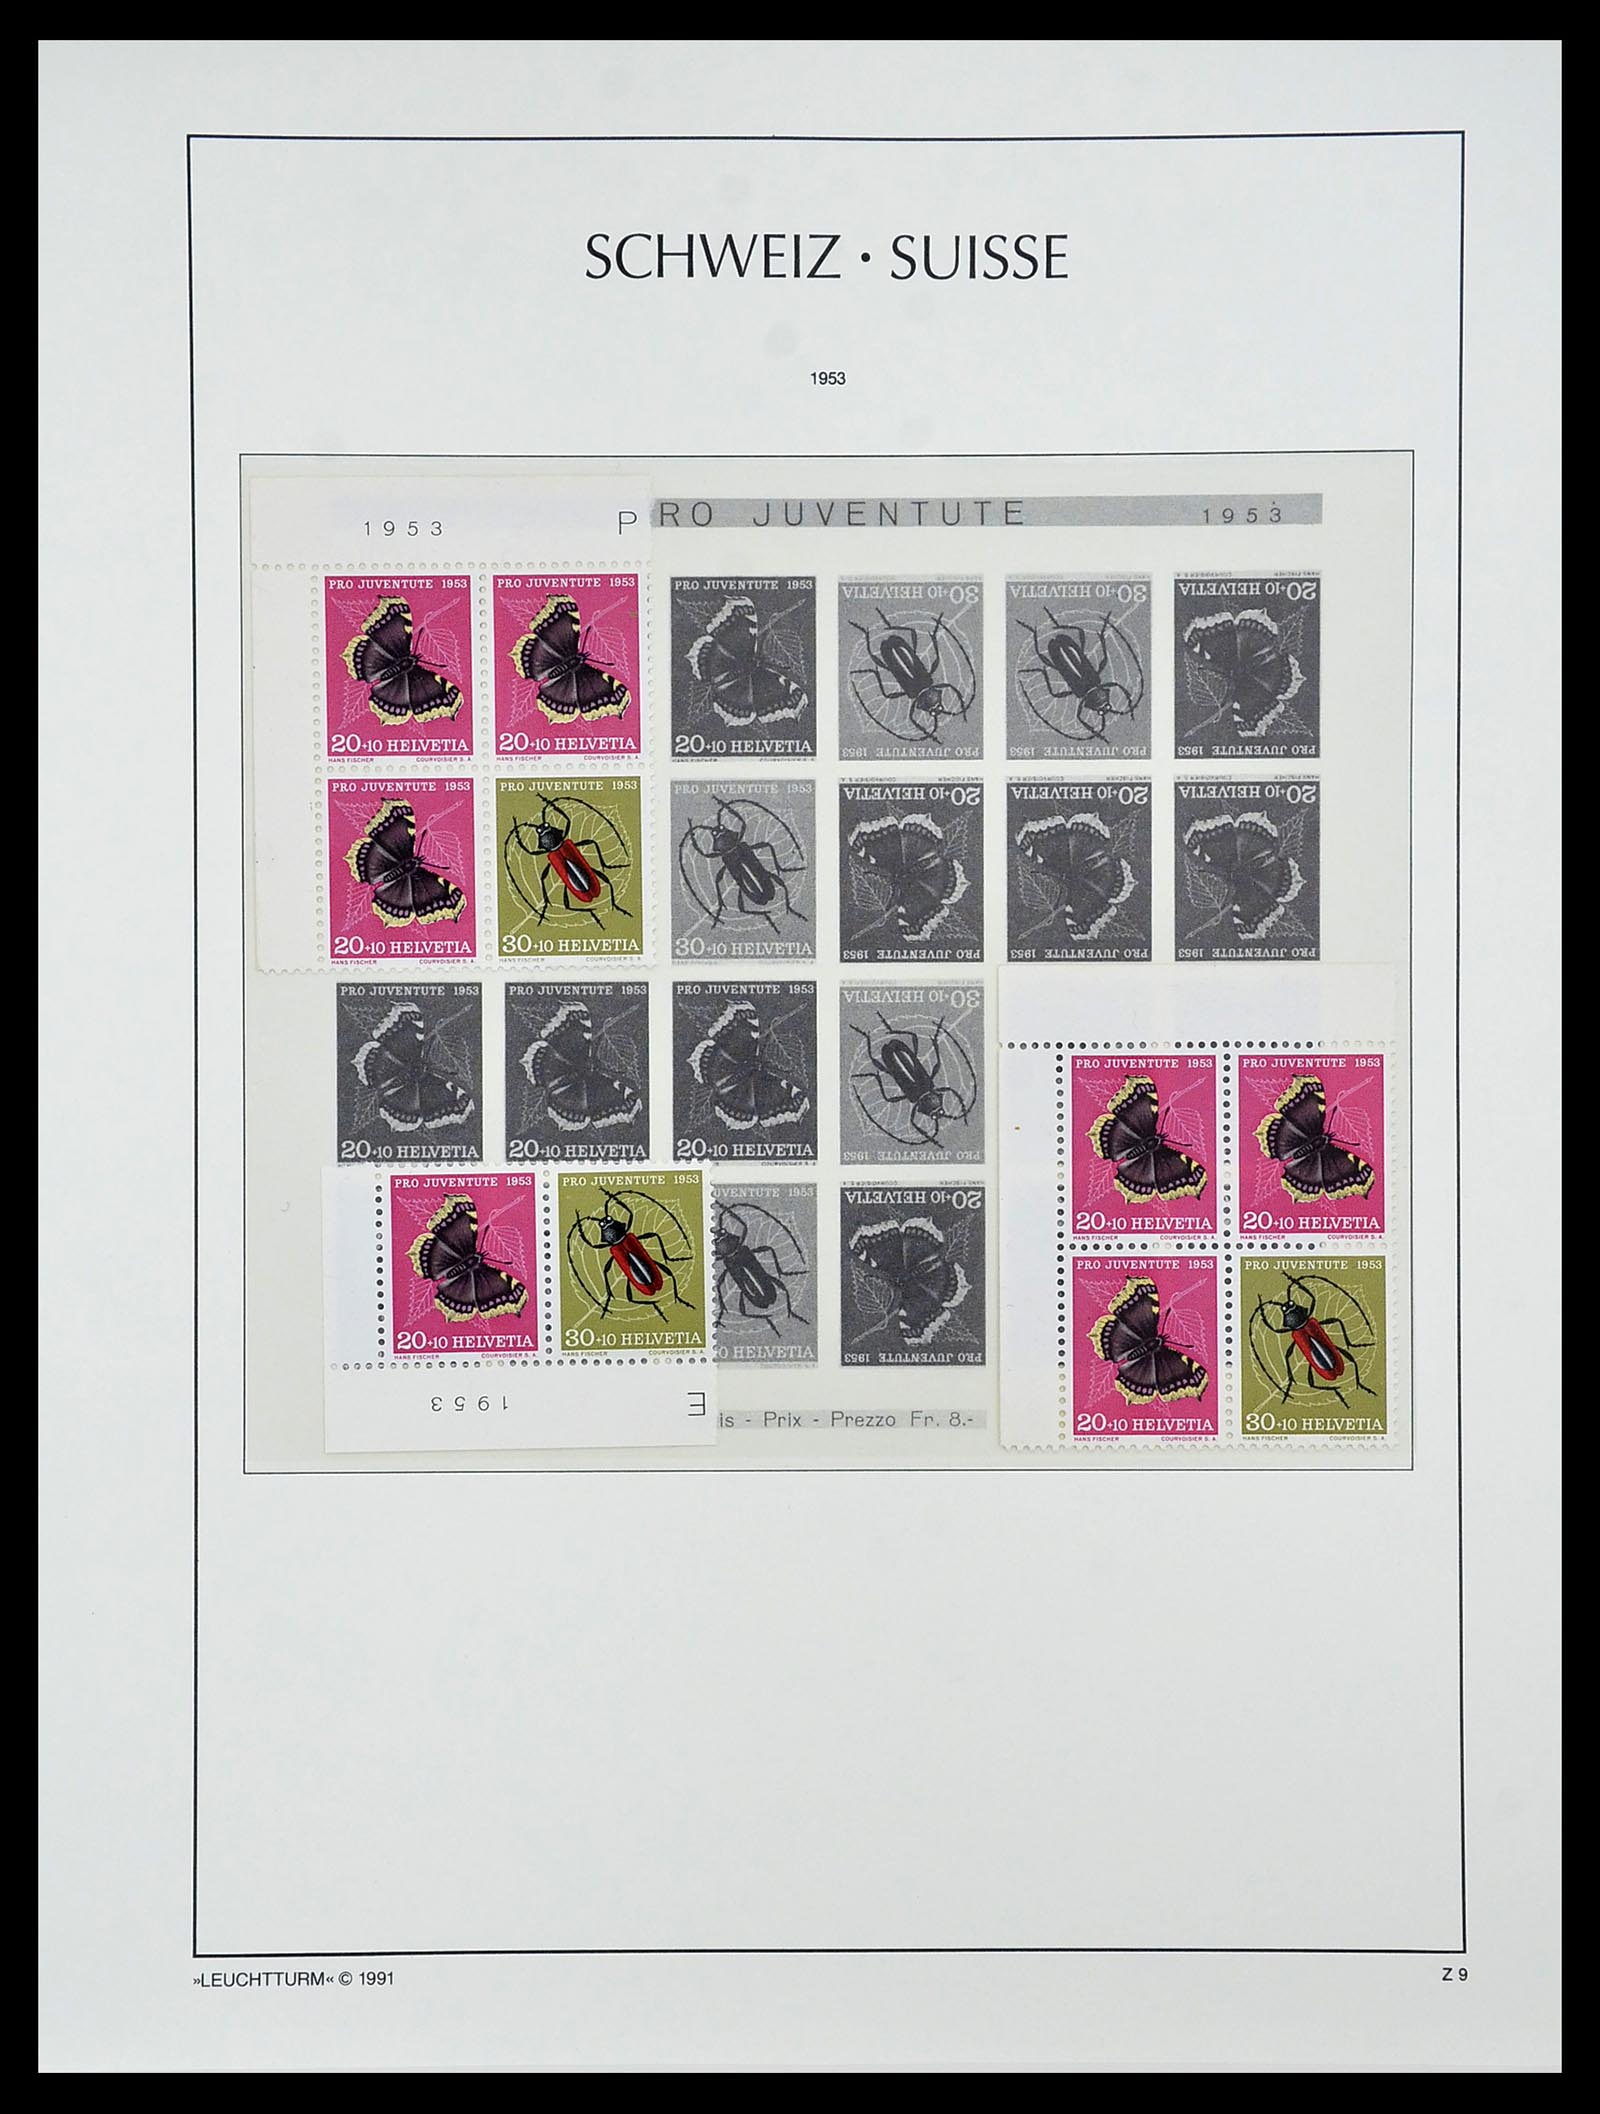 34557 027 - Postzegelverzameling 34557 Zwitserland combinaties 1909-1953.